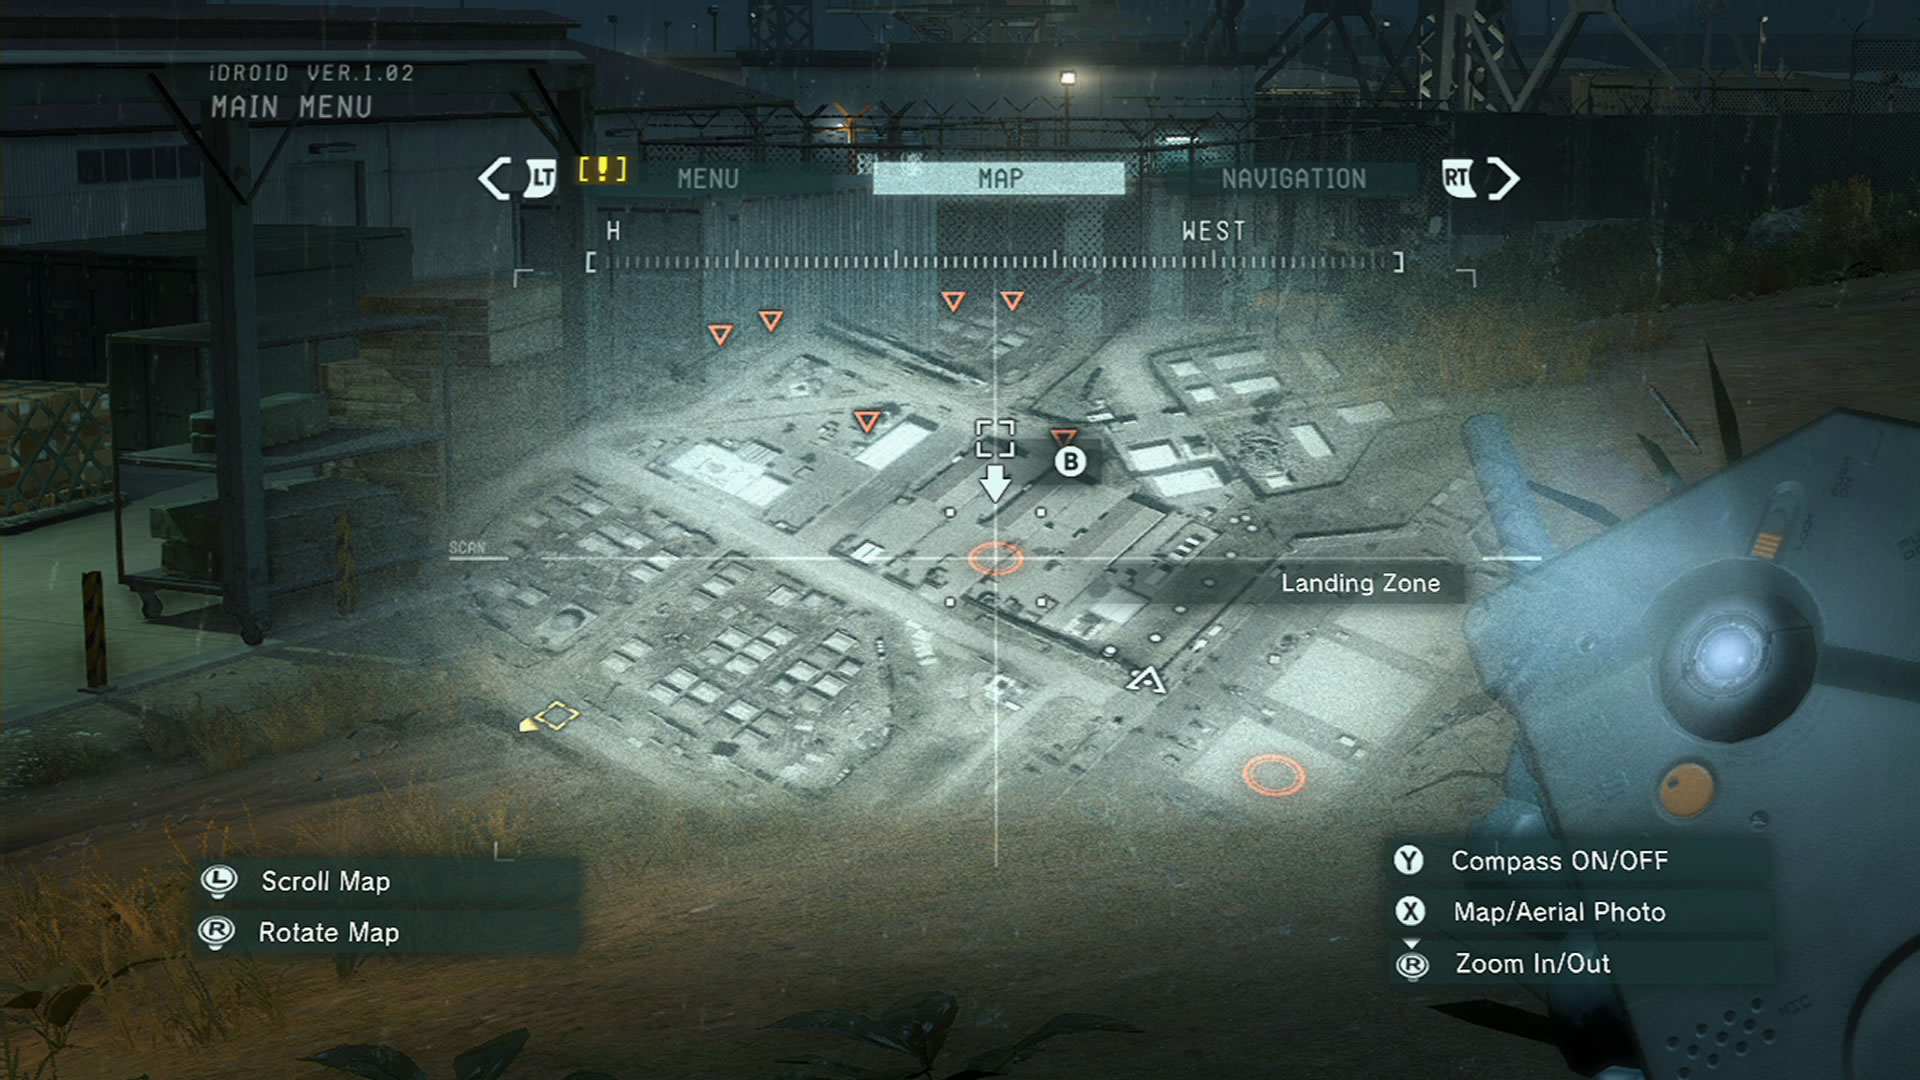  Nouvelles images de Metal Gear Solid V : Ground Zeroes